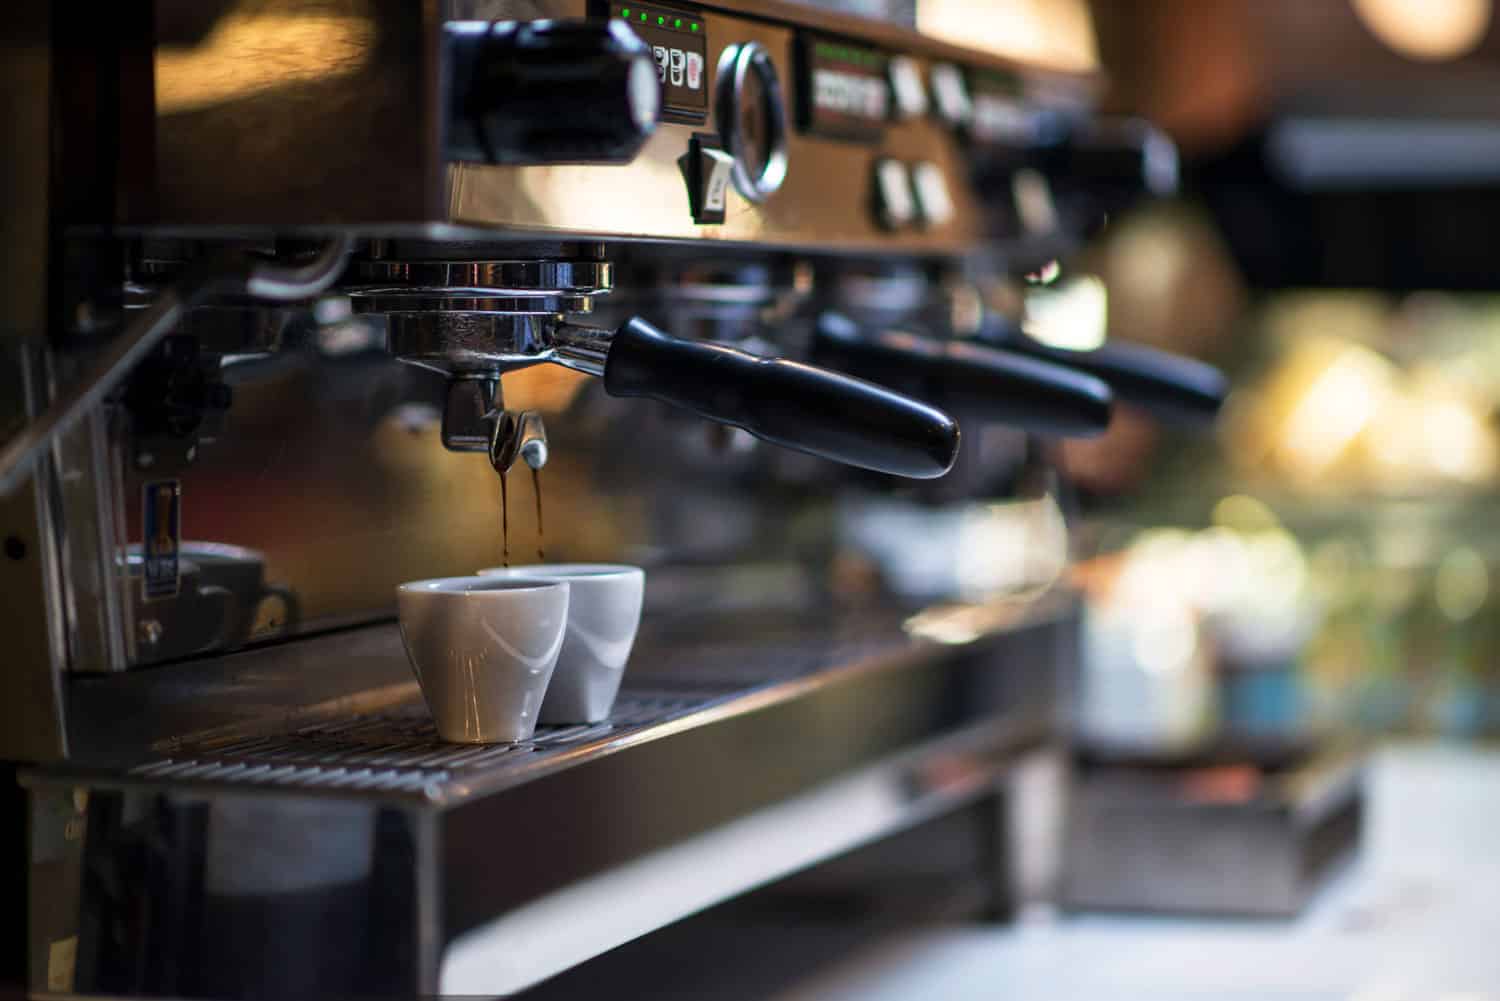 咖啡涌入两杯的咖啡机做一些咖啡拿铁咖啡。